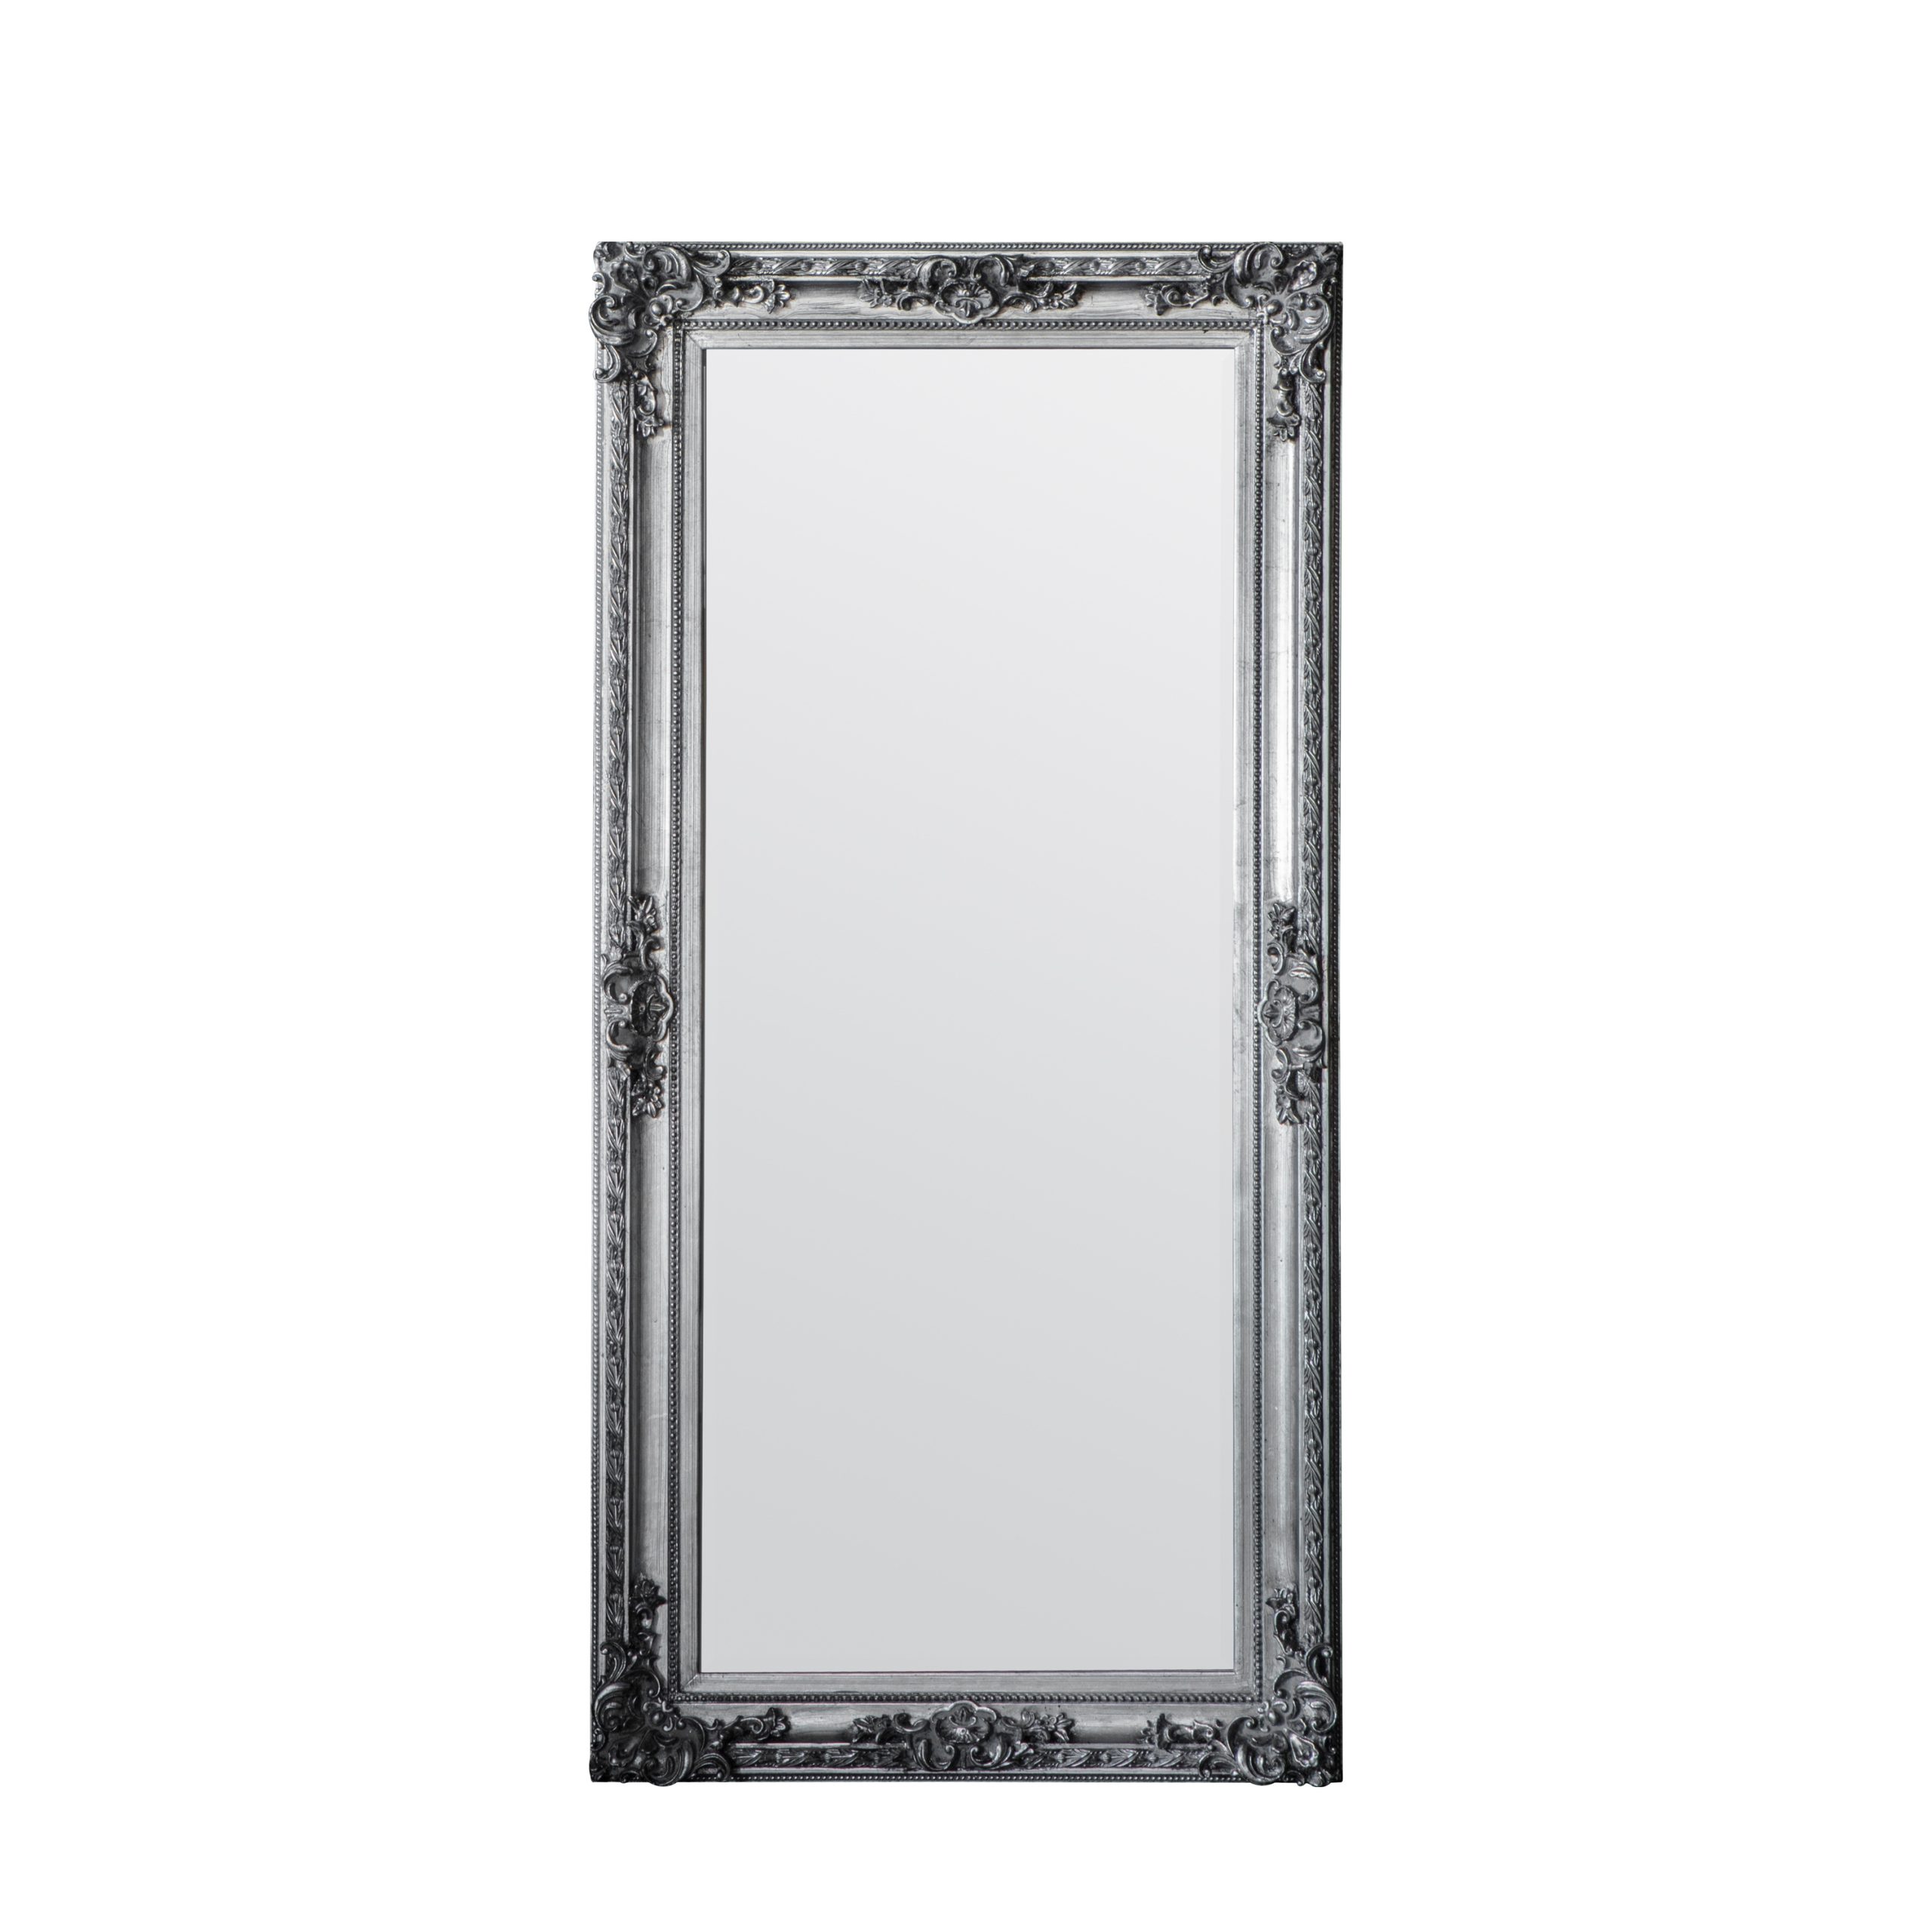 Gallery Direct Altori Leaner Mirror Silver